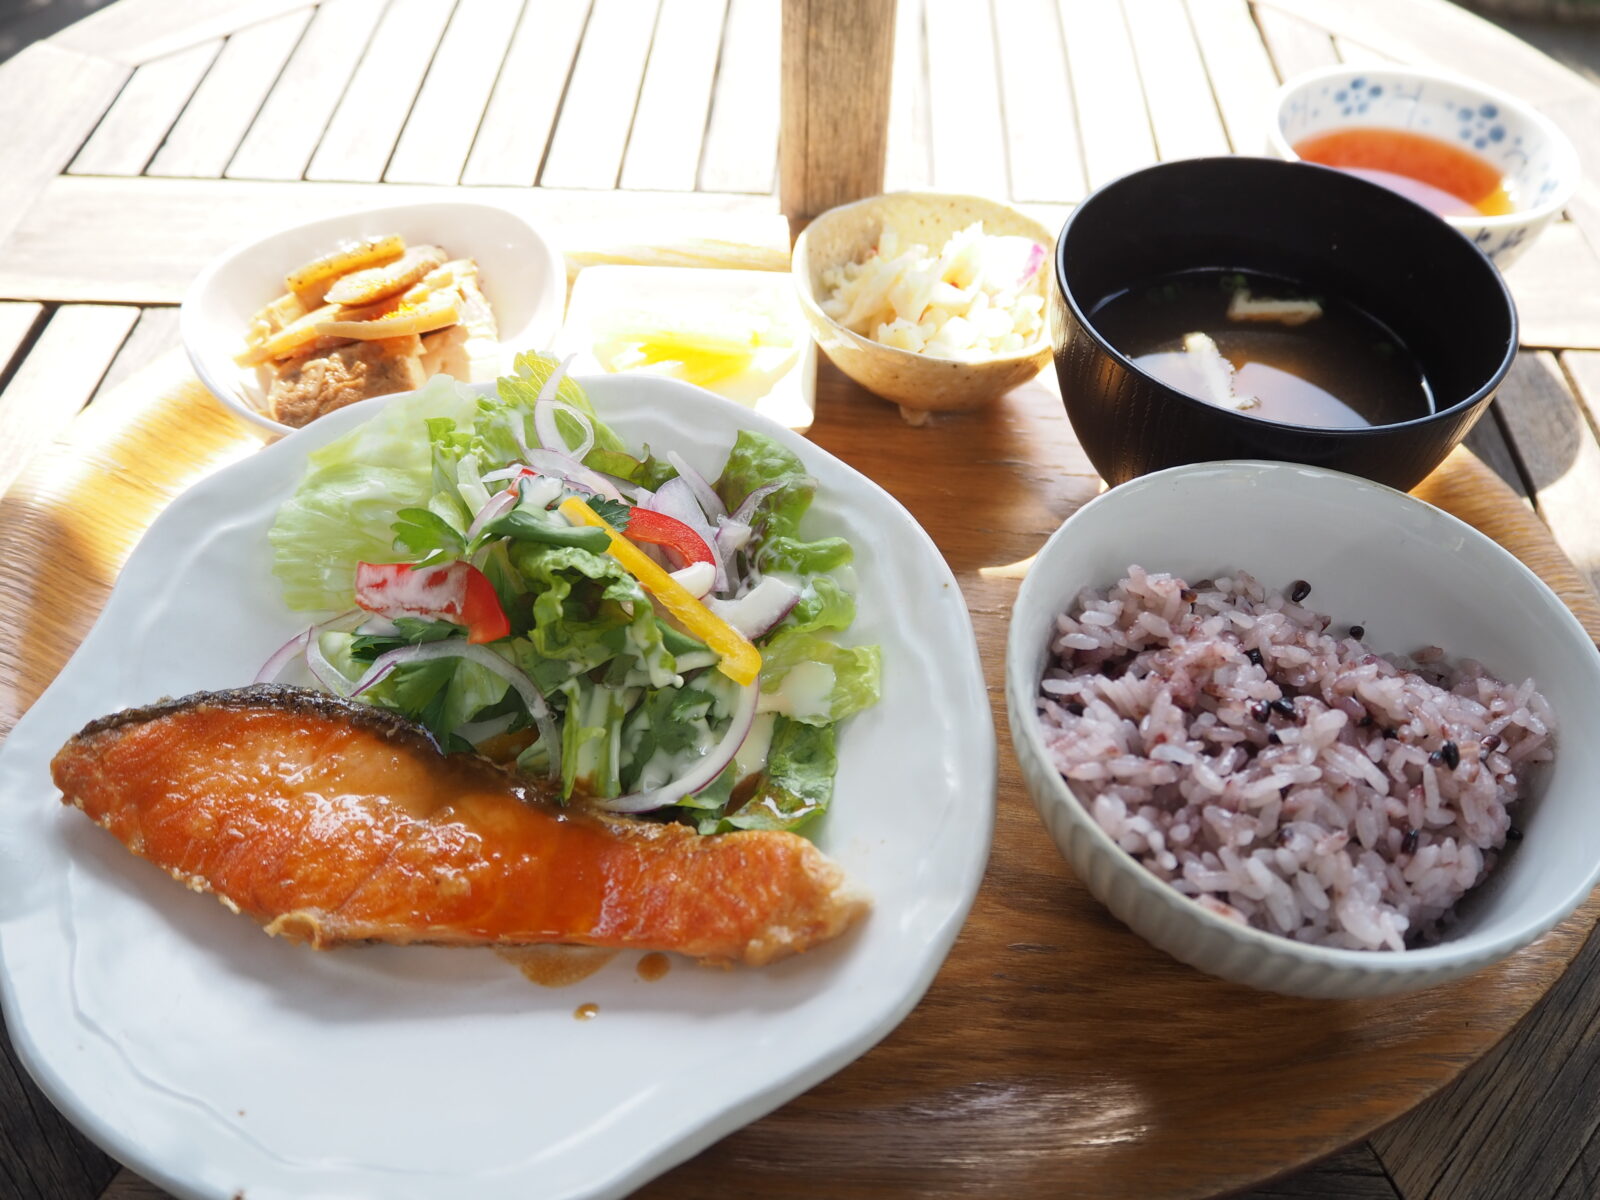 【小平市】朝どれ地元野菜を使った定食や本格スイーツが味わえる「カフェラグラス」